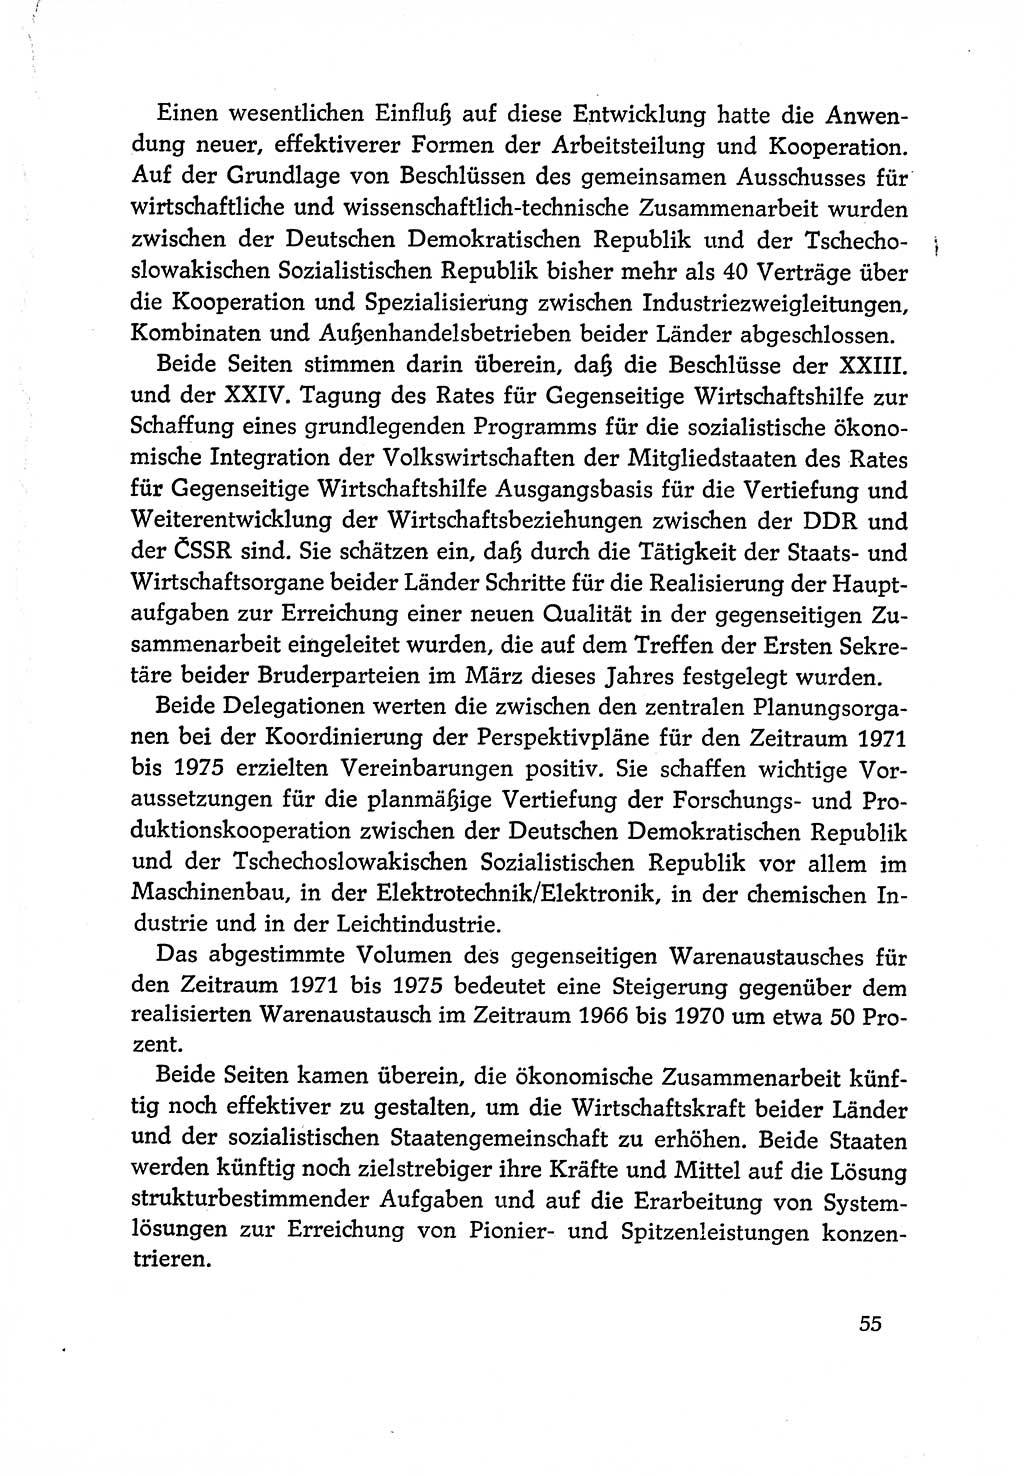 Dokumente der Sozialistischen Einheitspartei Deutschlands (SED) [Deutsche Demokratische Republik (DDR)] 1970-1971, Seite 55 (Dok. SED DDR 1970-1971, S. 55)